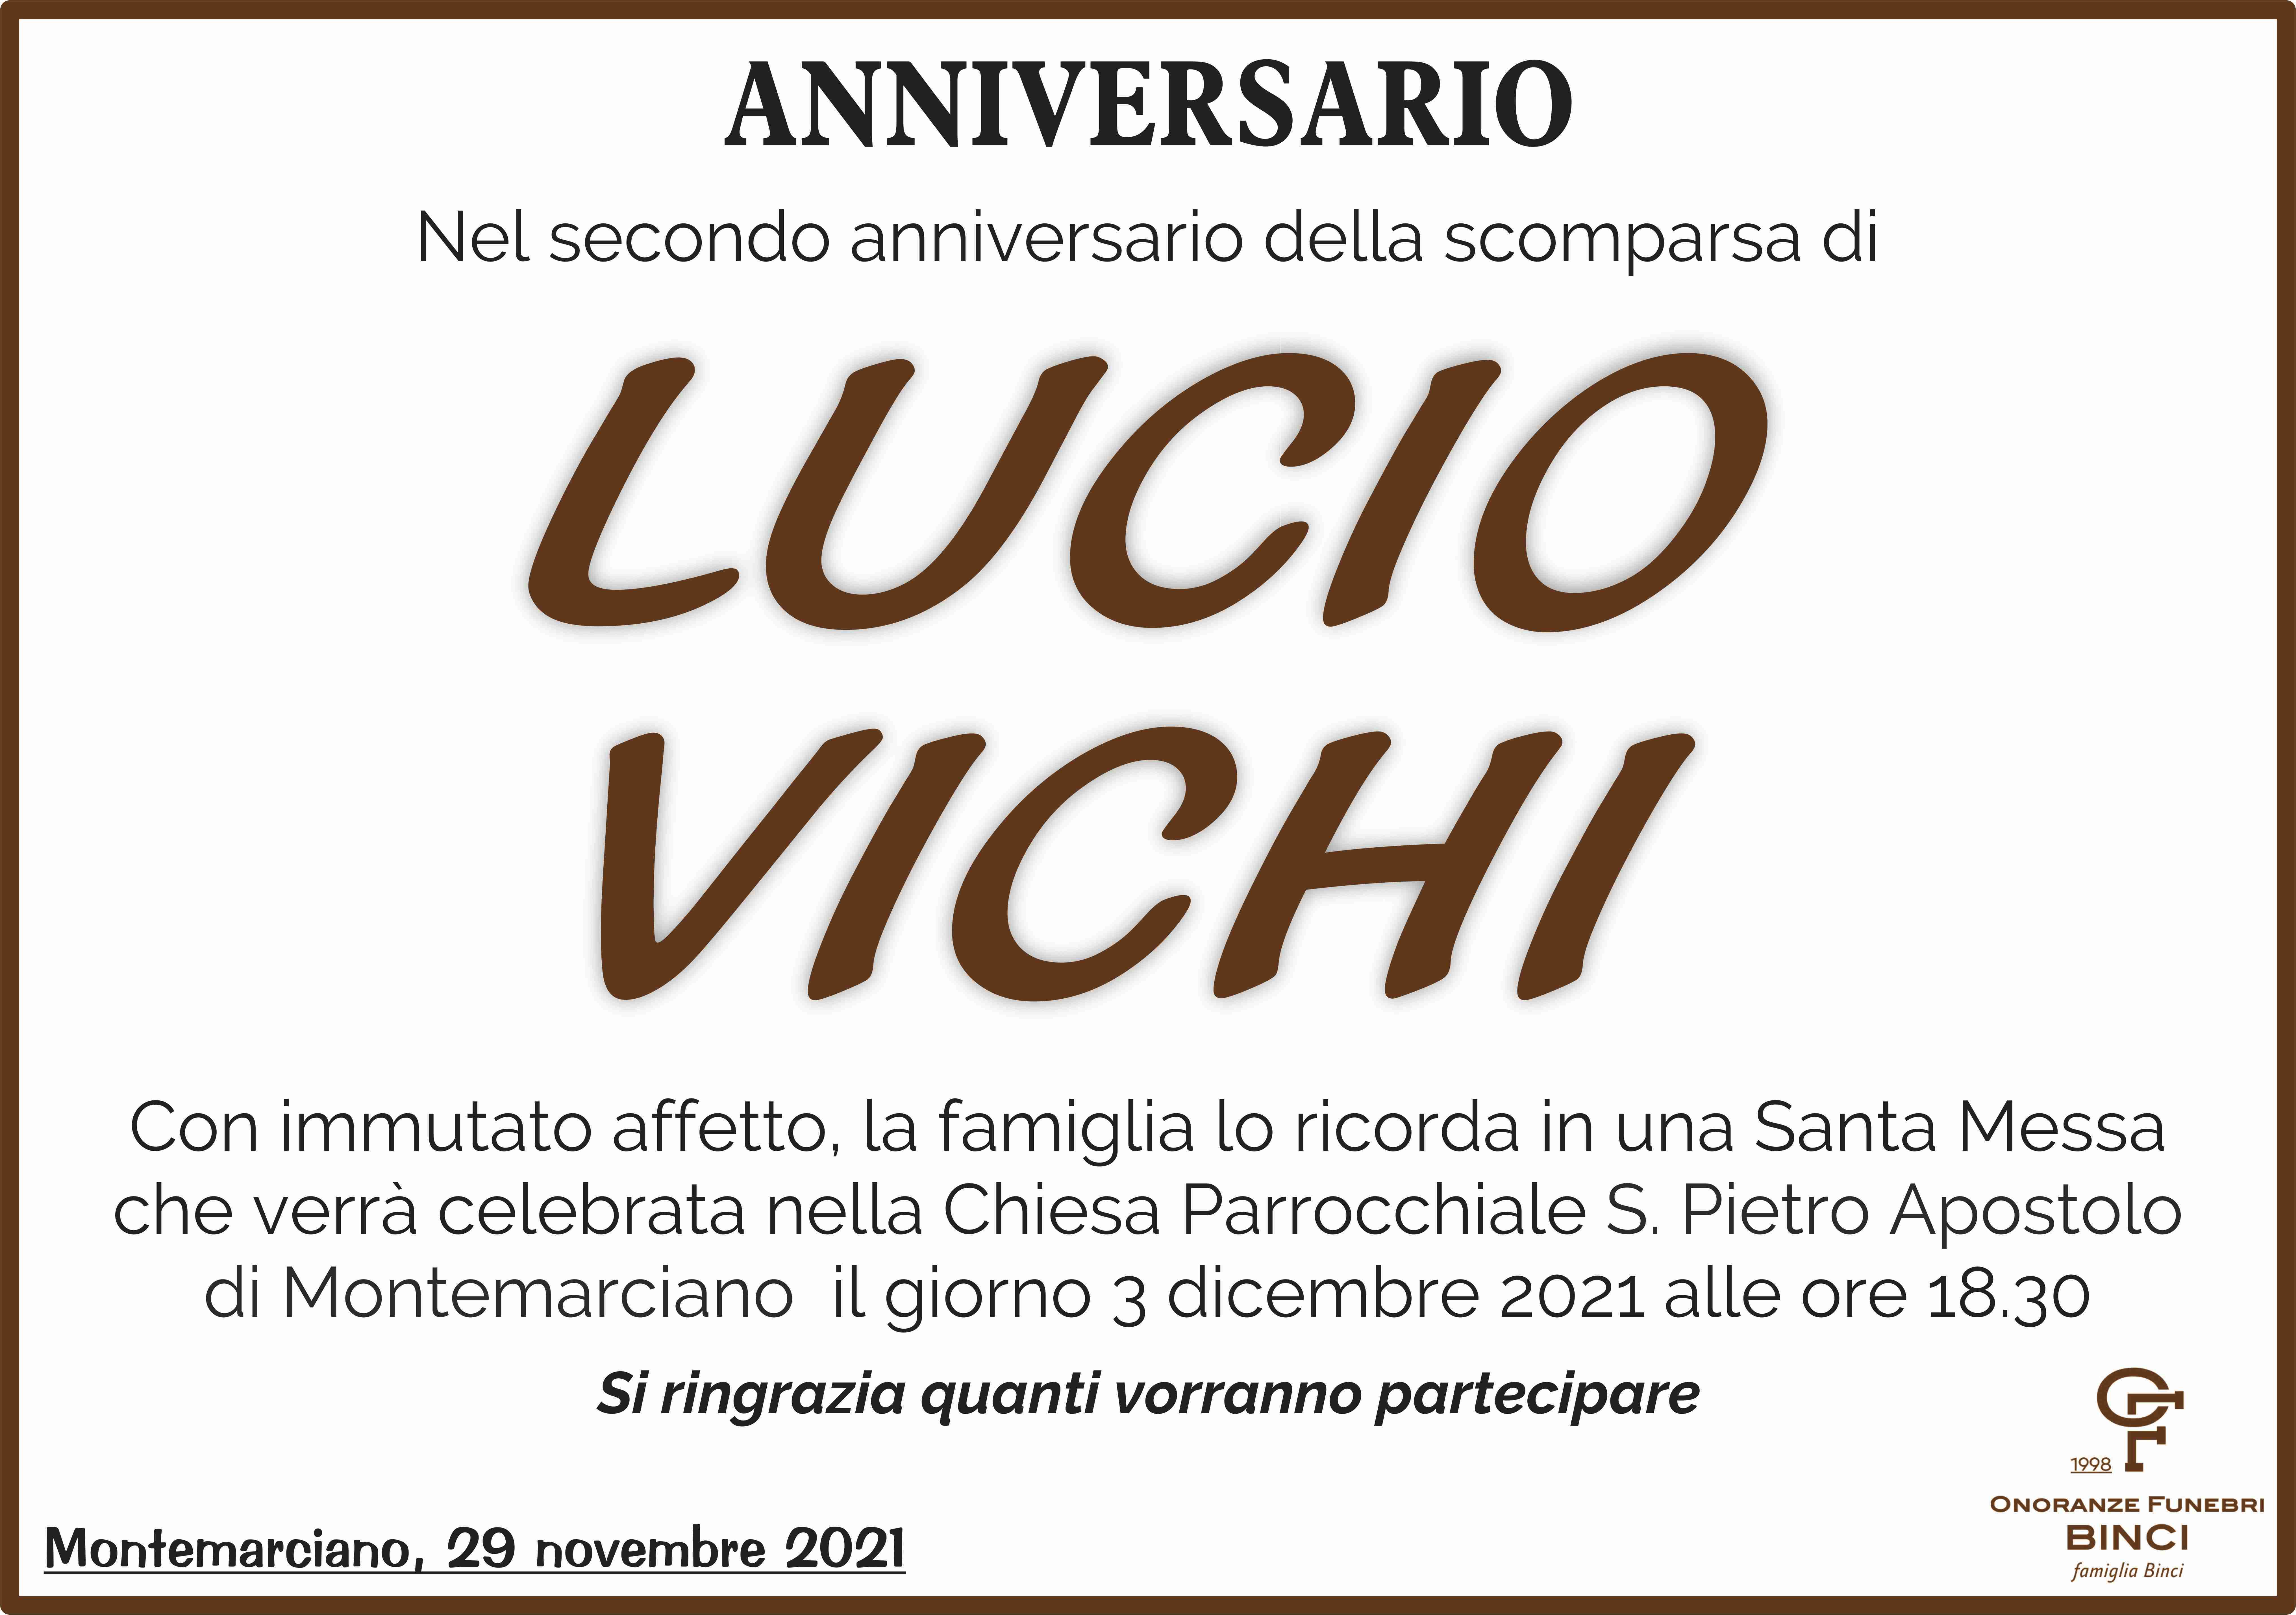 Lucio Vichi